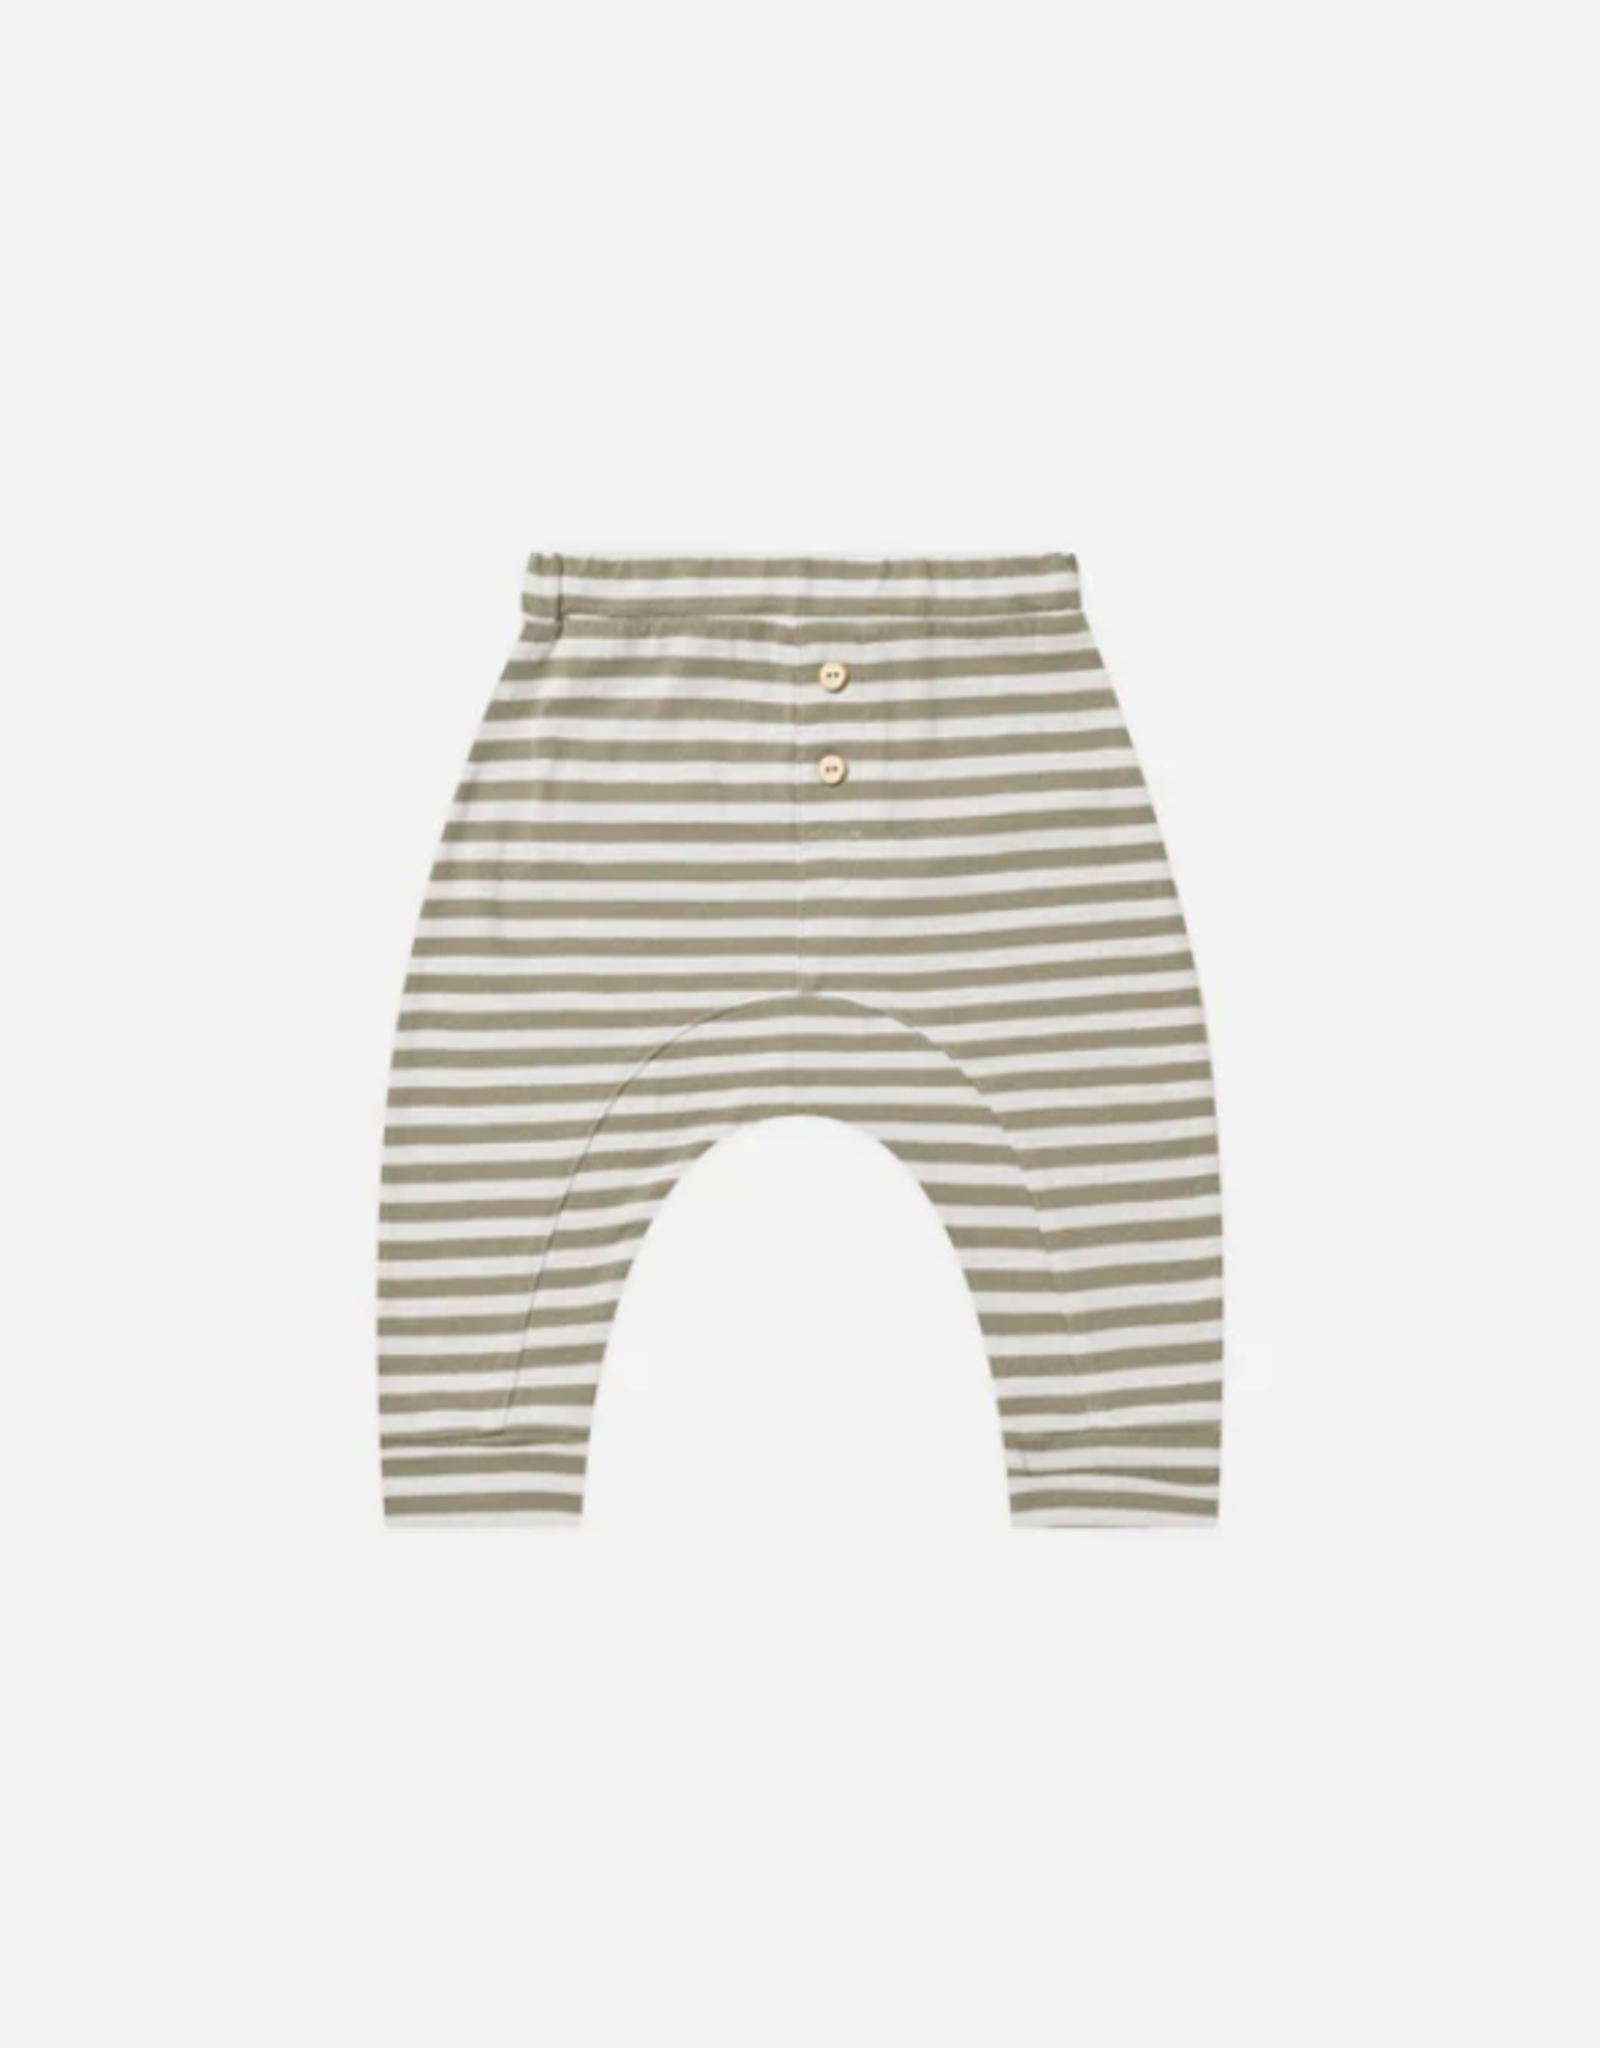 Rylee+Cru 6-12mo: Baby Cru Pant - Fern stripe